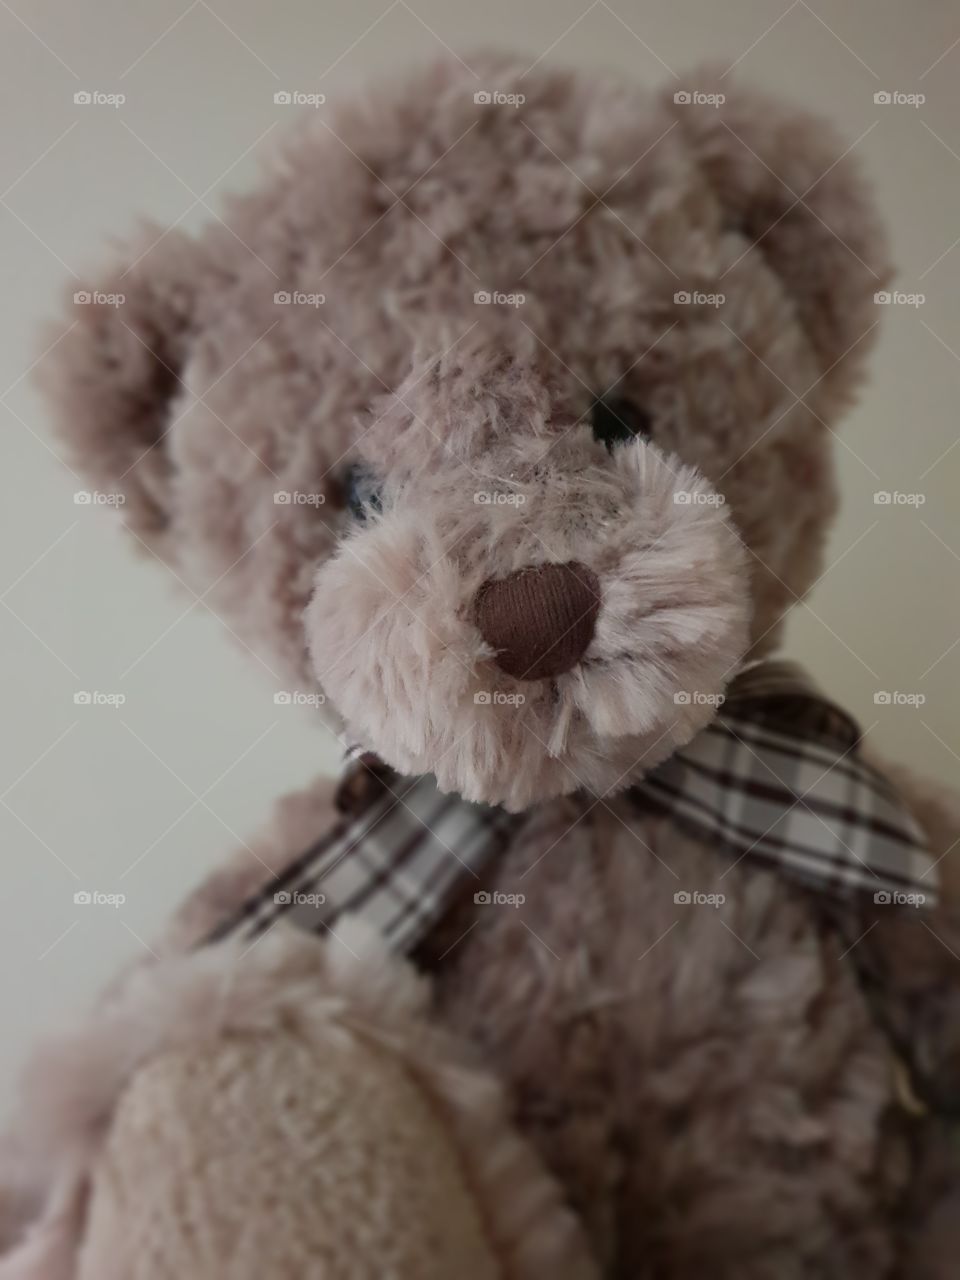 cuddly fluffy teddy bear toy